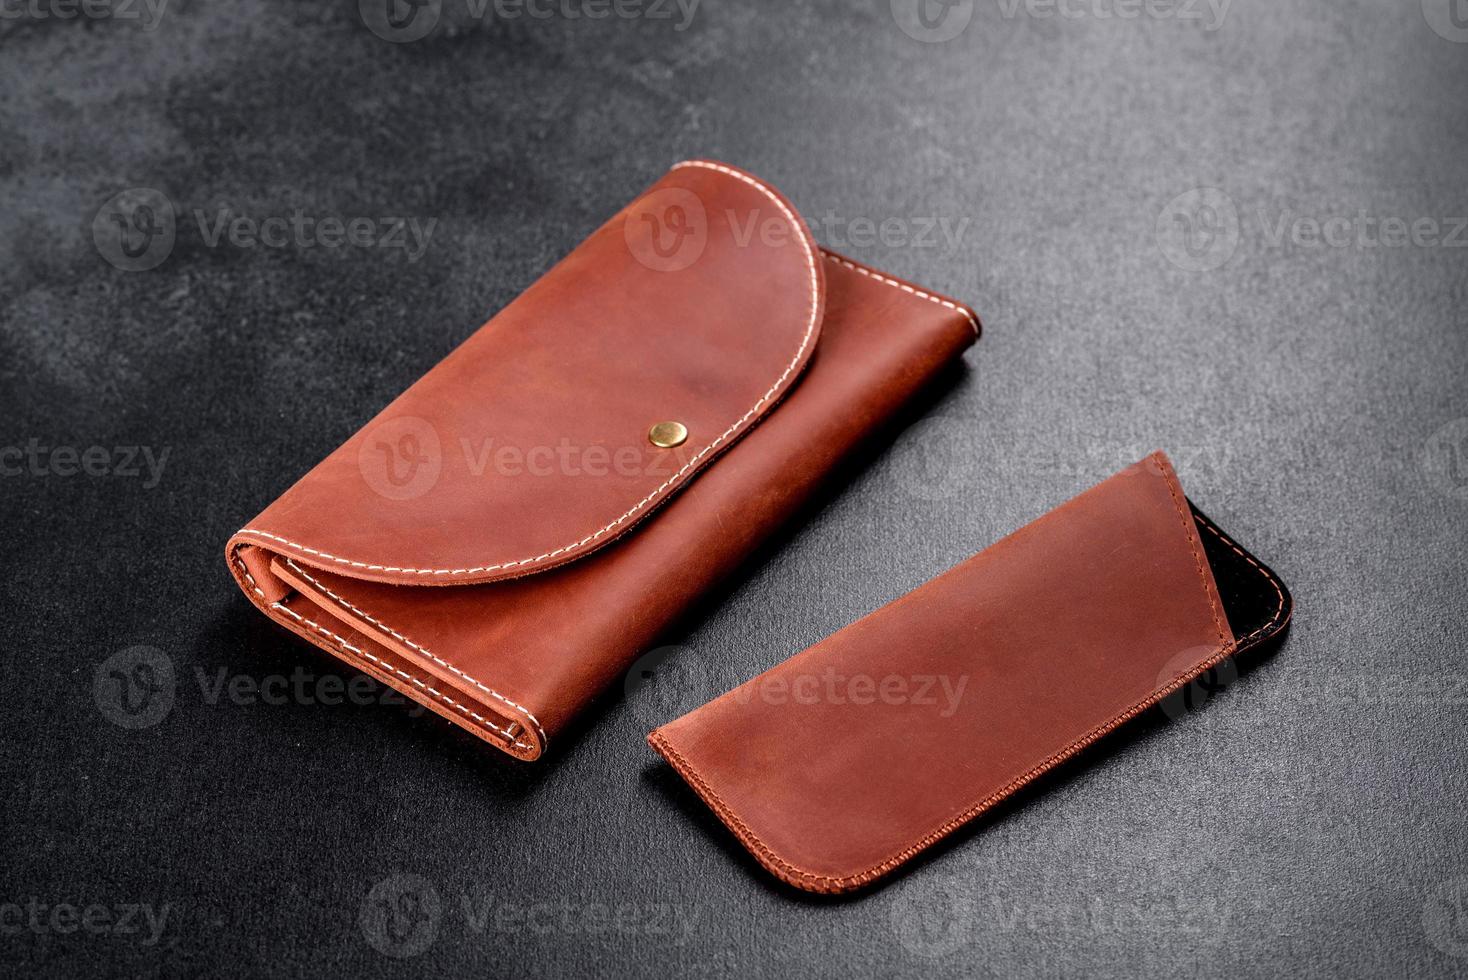 mooie leren bruine portemonnee gemaakt van leer om papiergeld in te bewaren foto